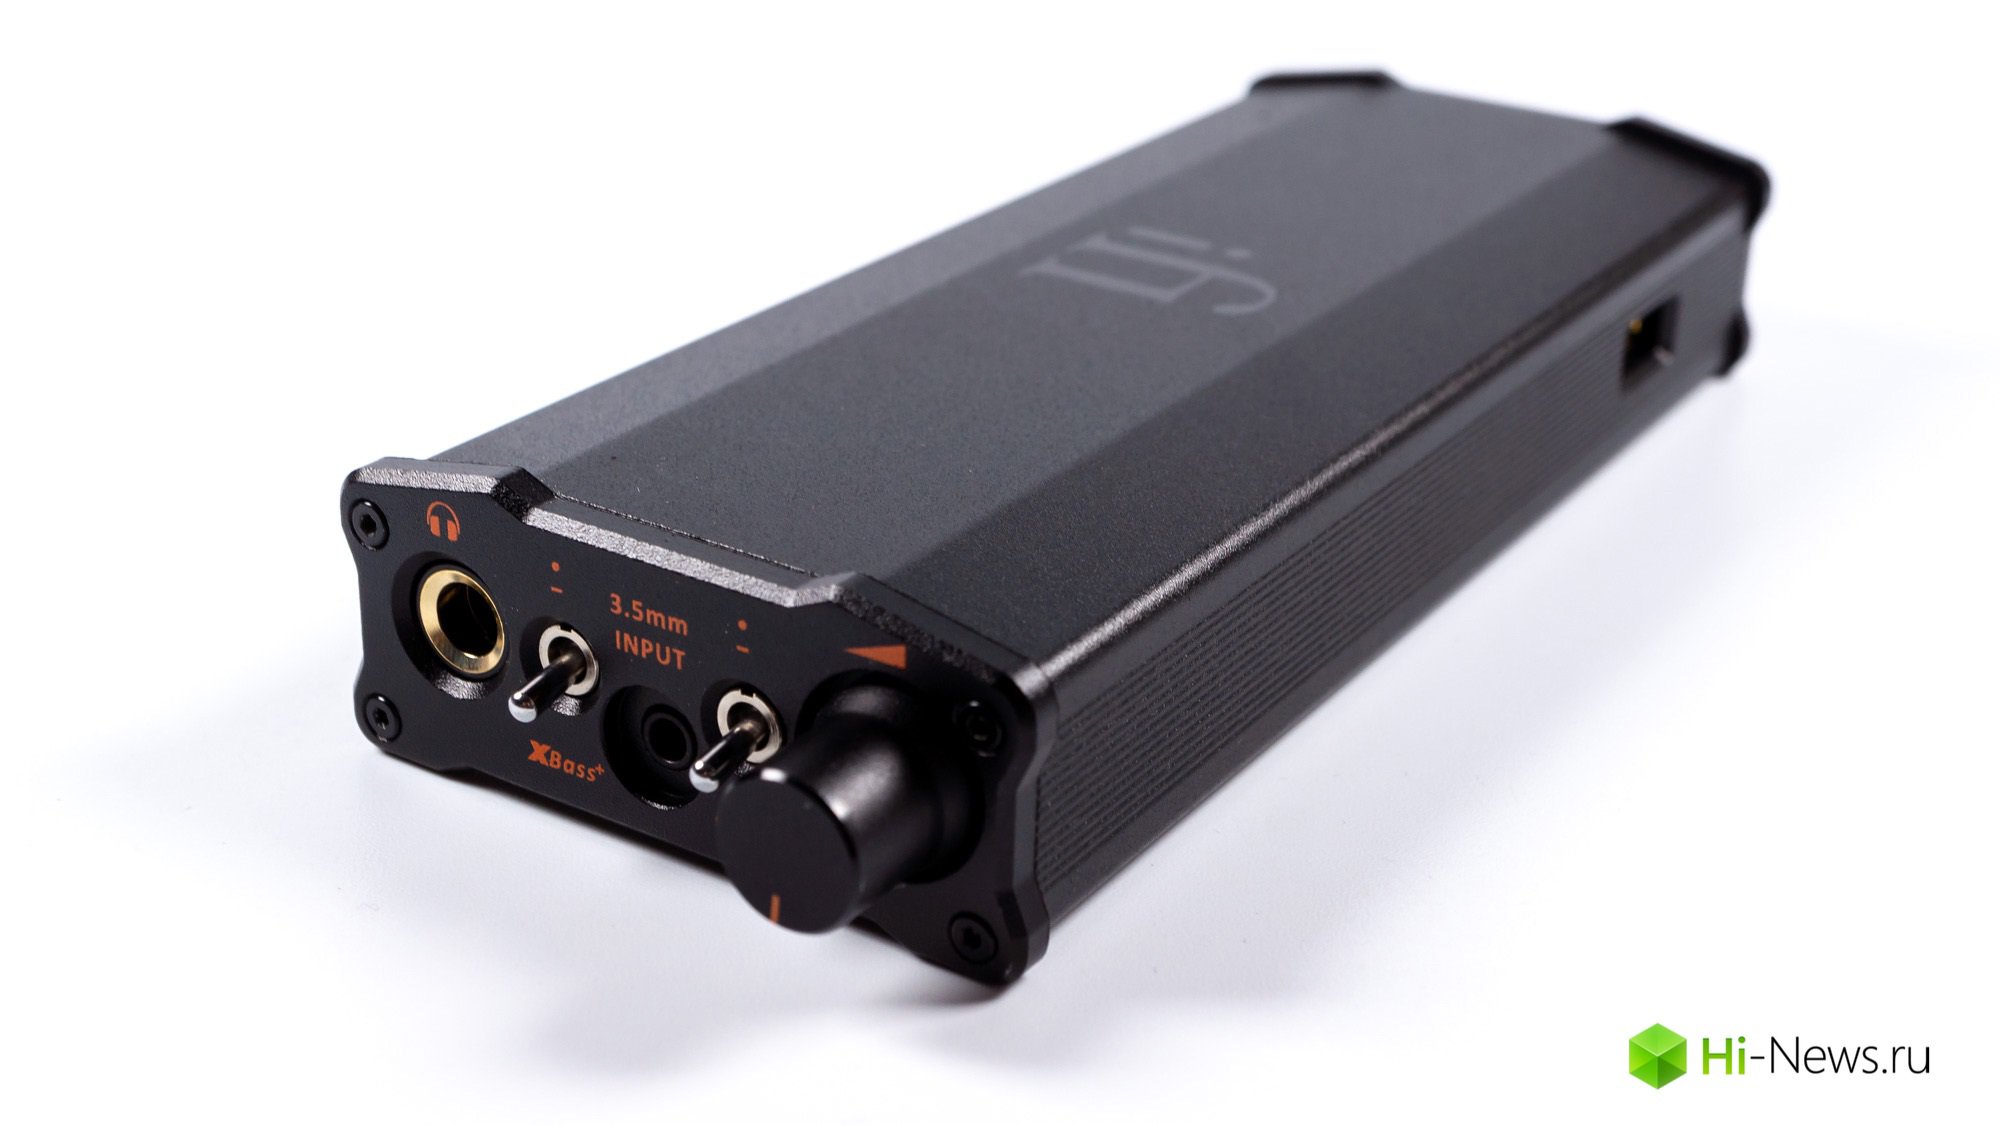 Genel bakış taşınabilir DAC ve amp ıfı Micro iDSD Black Label